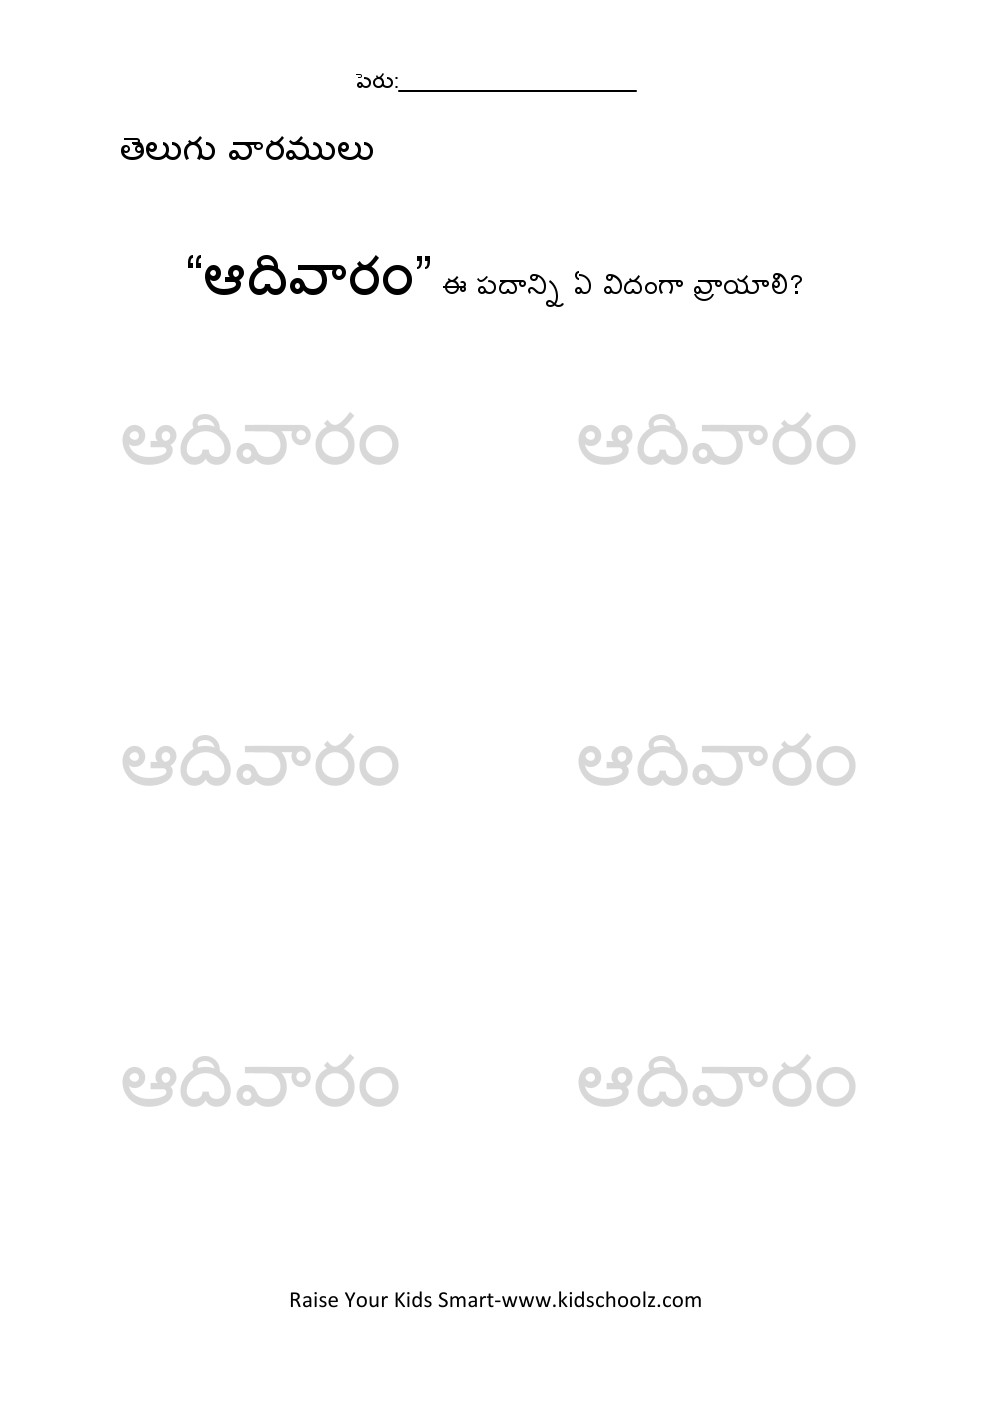 Telugu- weekdays tracing worksheet